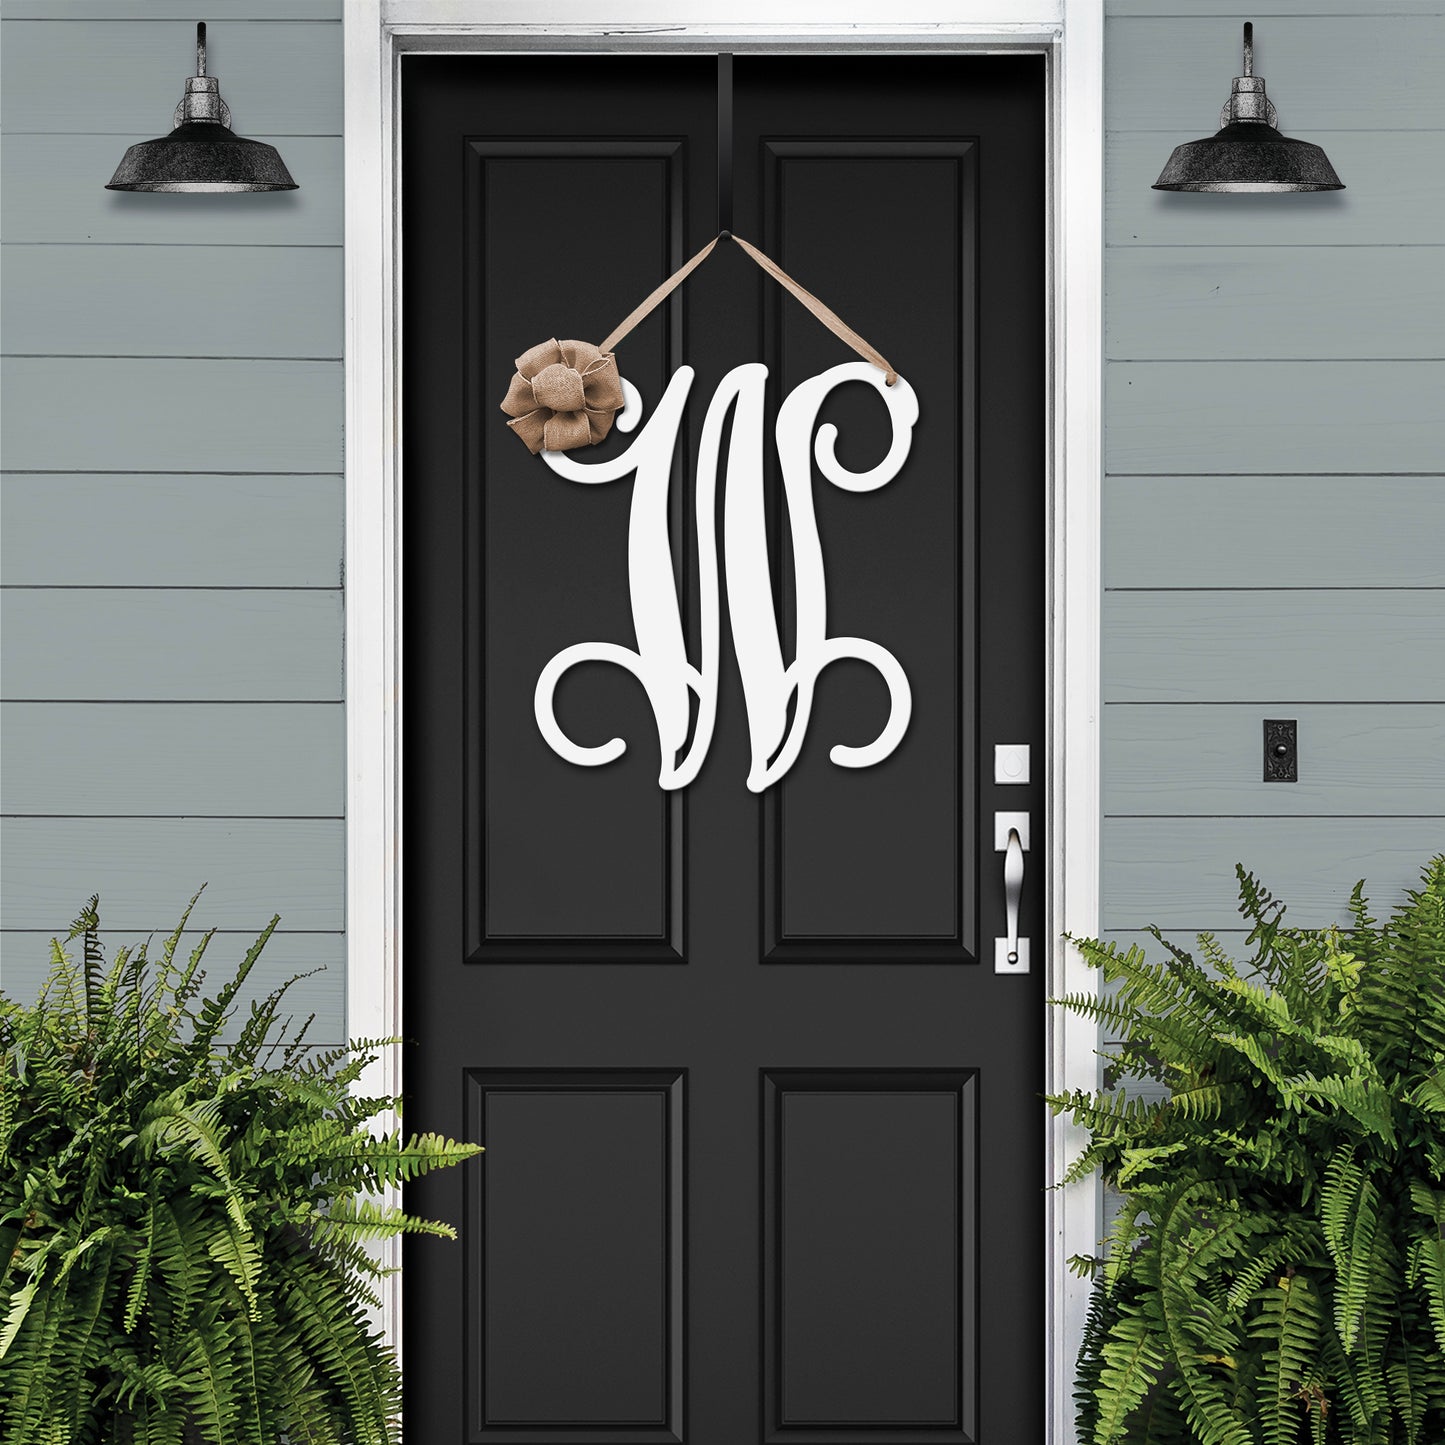 Metal Initial door wreath- Monogram Wreath